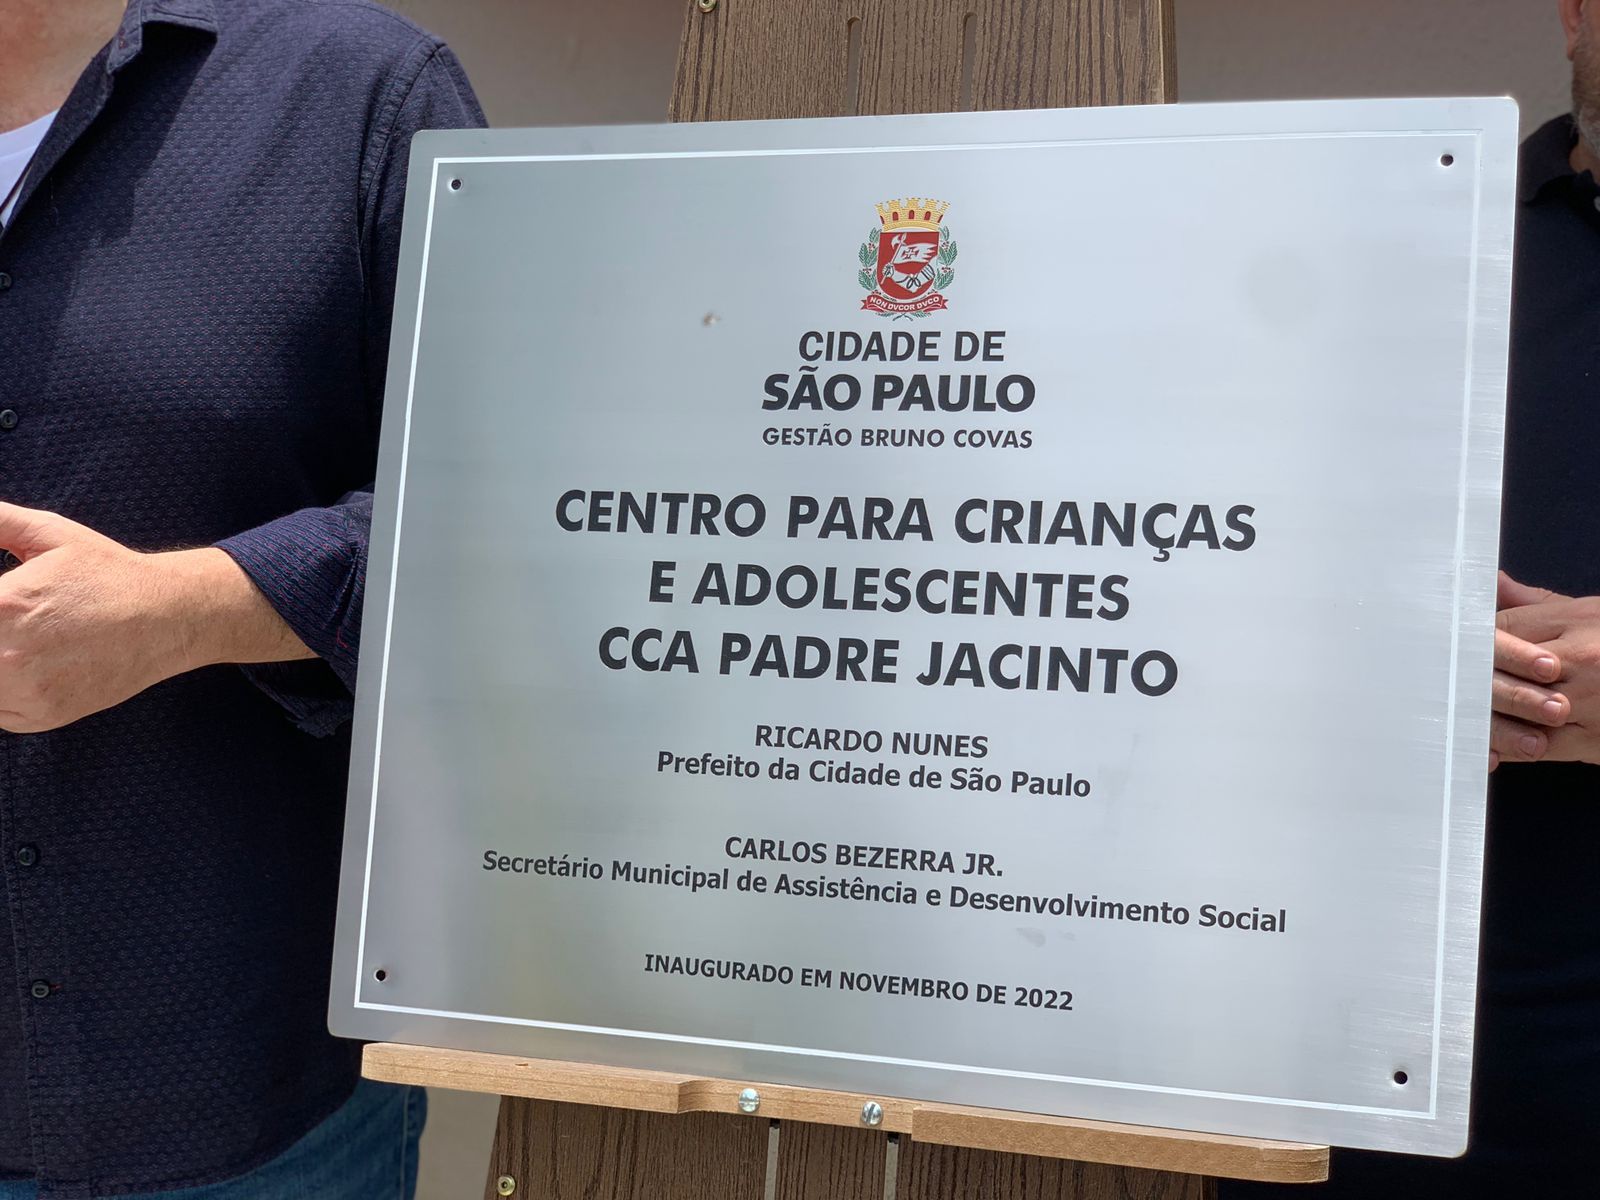 Placa do serviço CCA ‘Padre Jacinto’ apoiada no cavalete na cerimônia de inauguração.